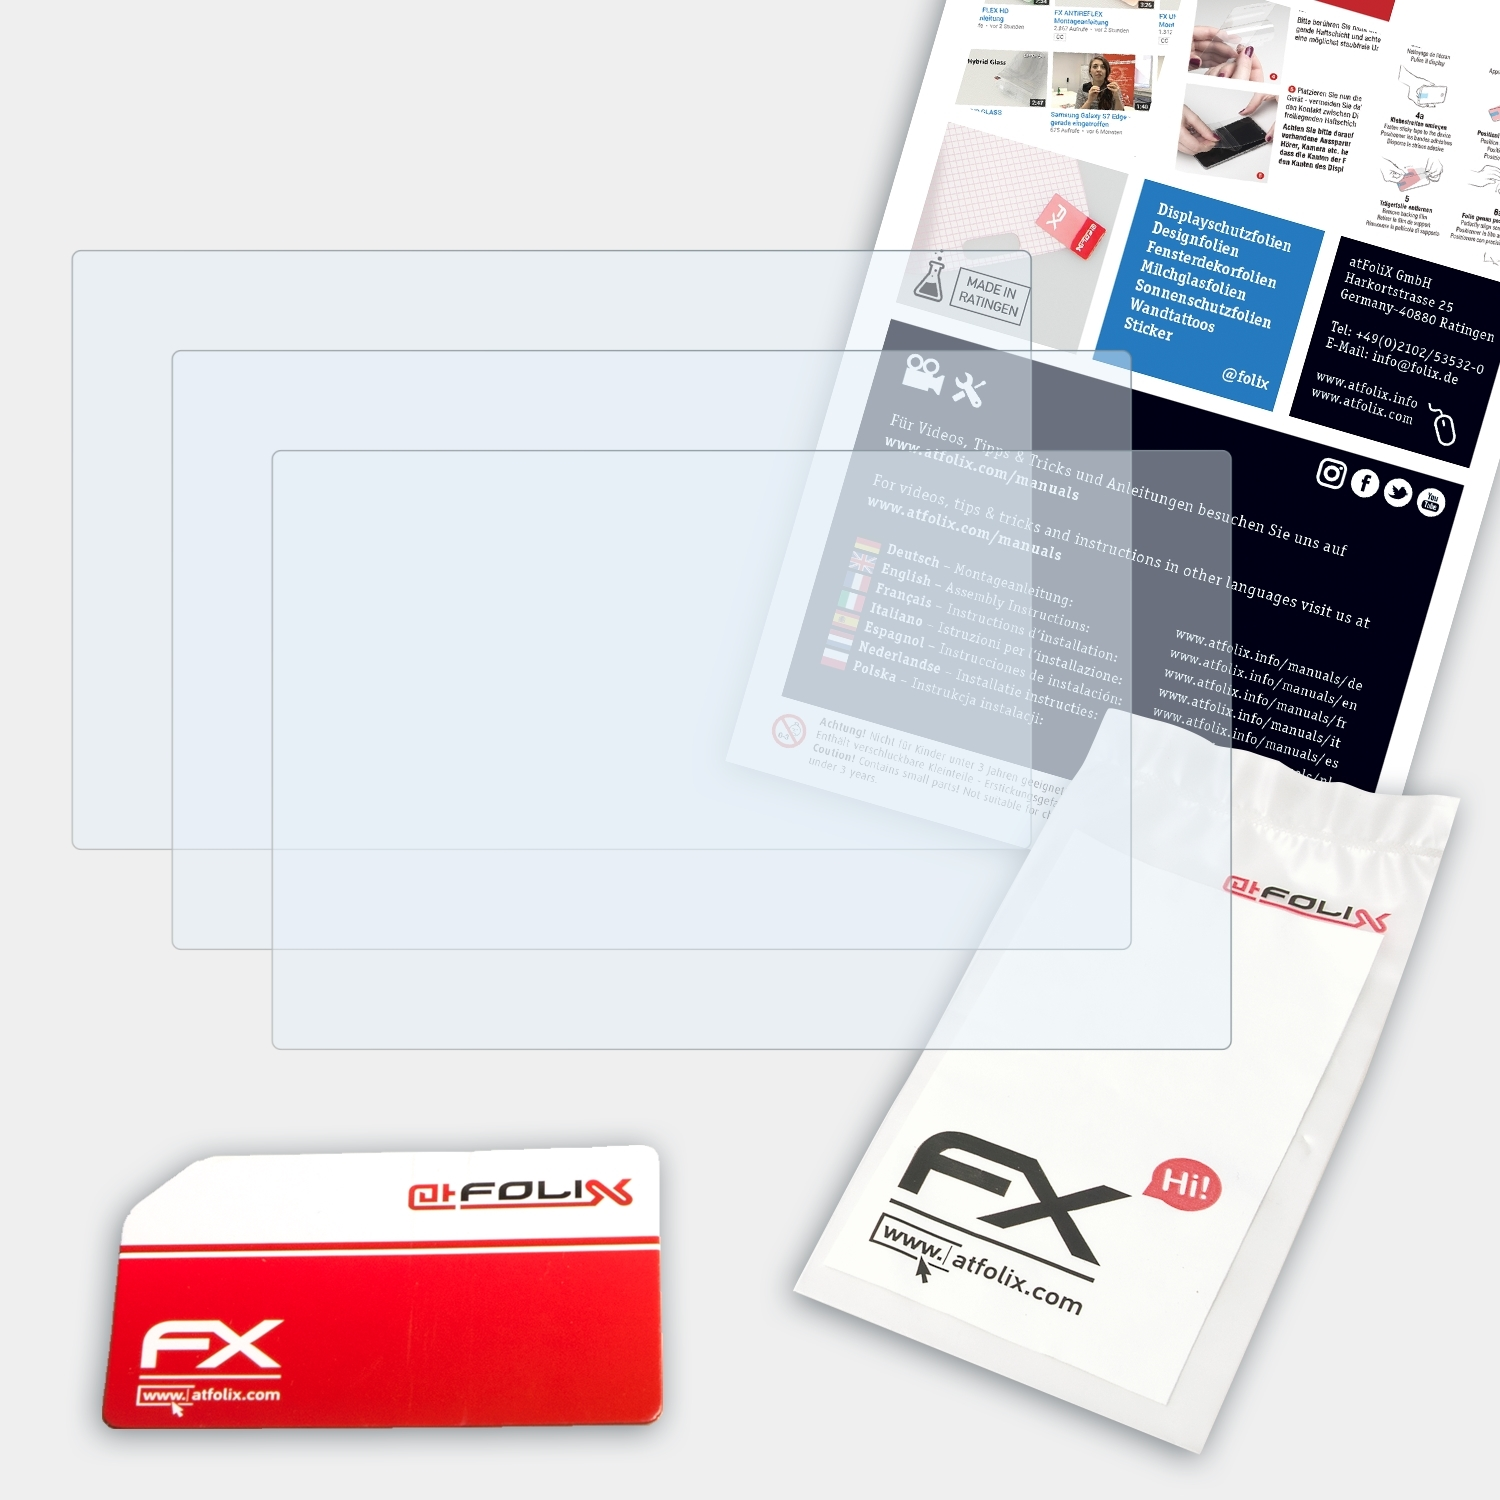 ATFOLIX 3x FX-Clear Displayschutz(für Medion GoPal E5470)